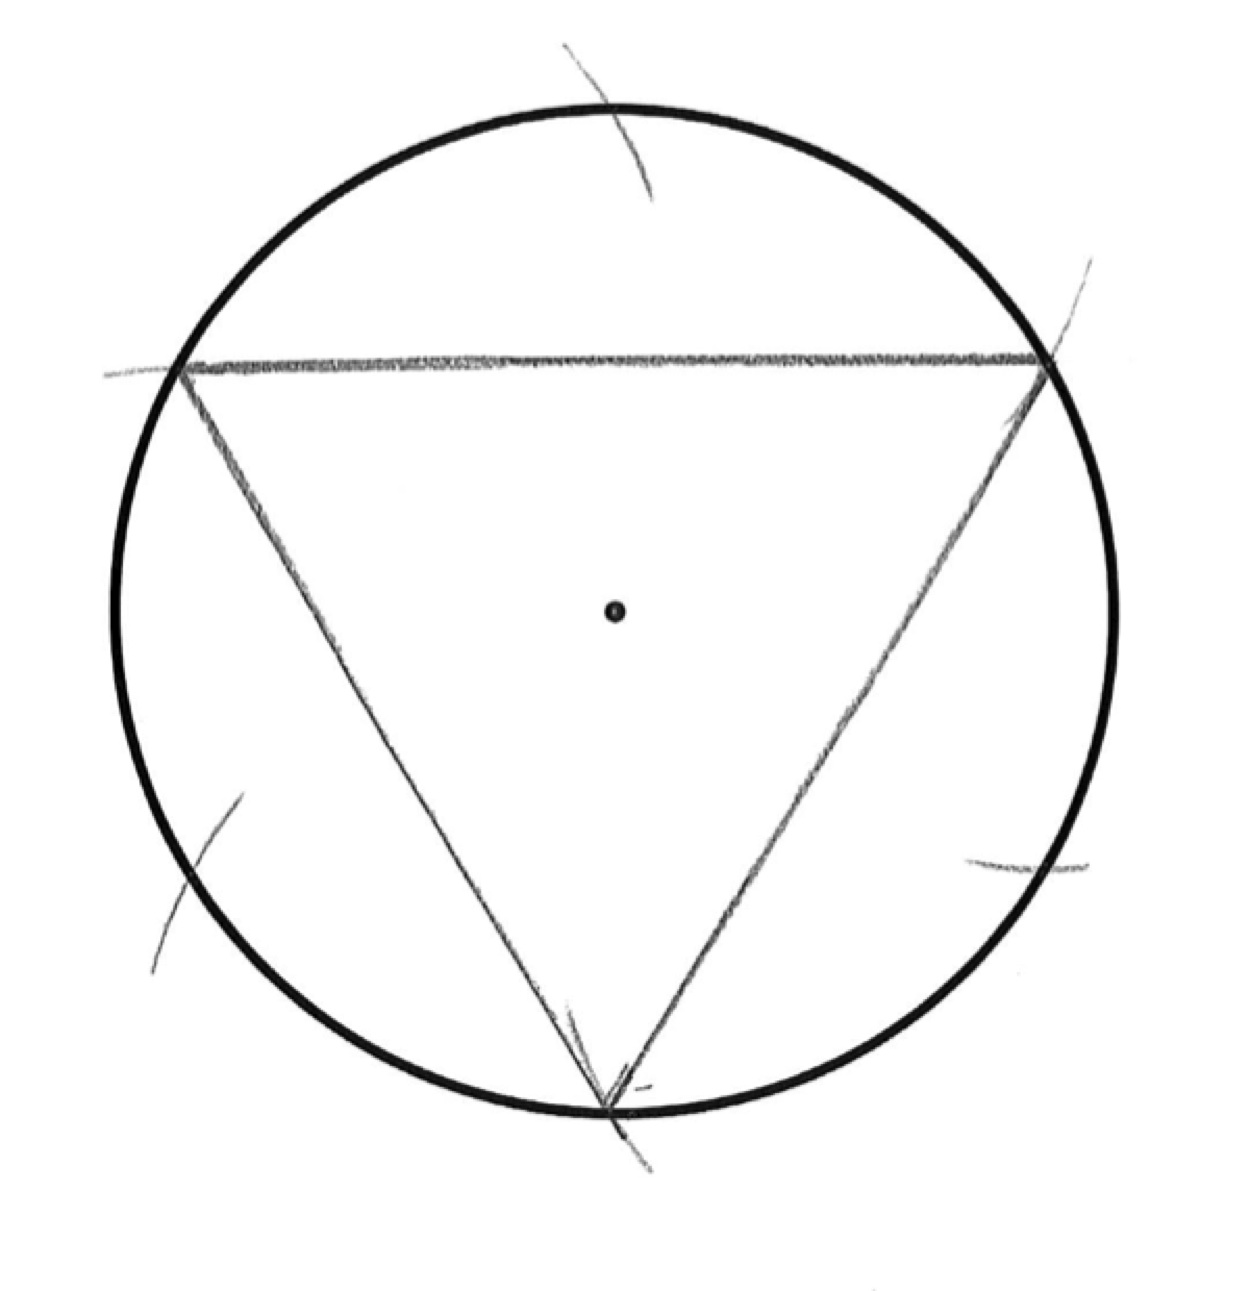 Как нарисовать равносторонний. Как построить равносторонний треугольник списанный в окр. Как начертить равносторонний треугольник в окружности. Построение равностороннего треугольника вписанного в окружность. Равносторонний треугольник вписанный в окружность как построить.